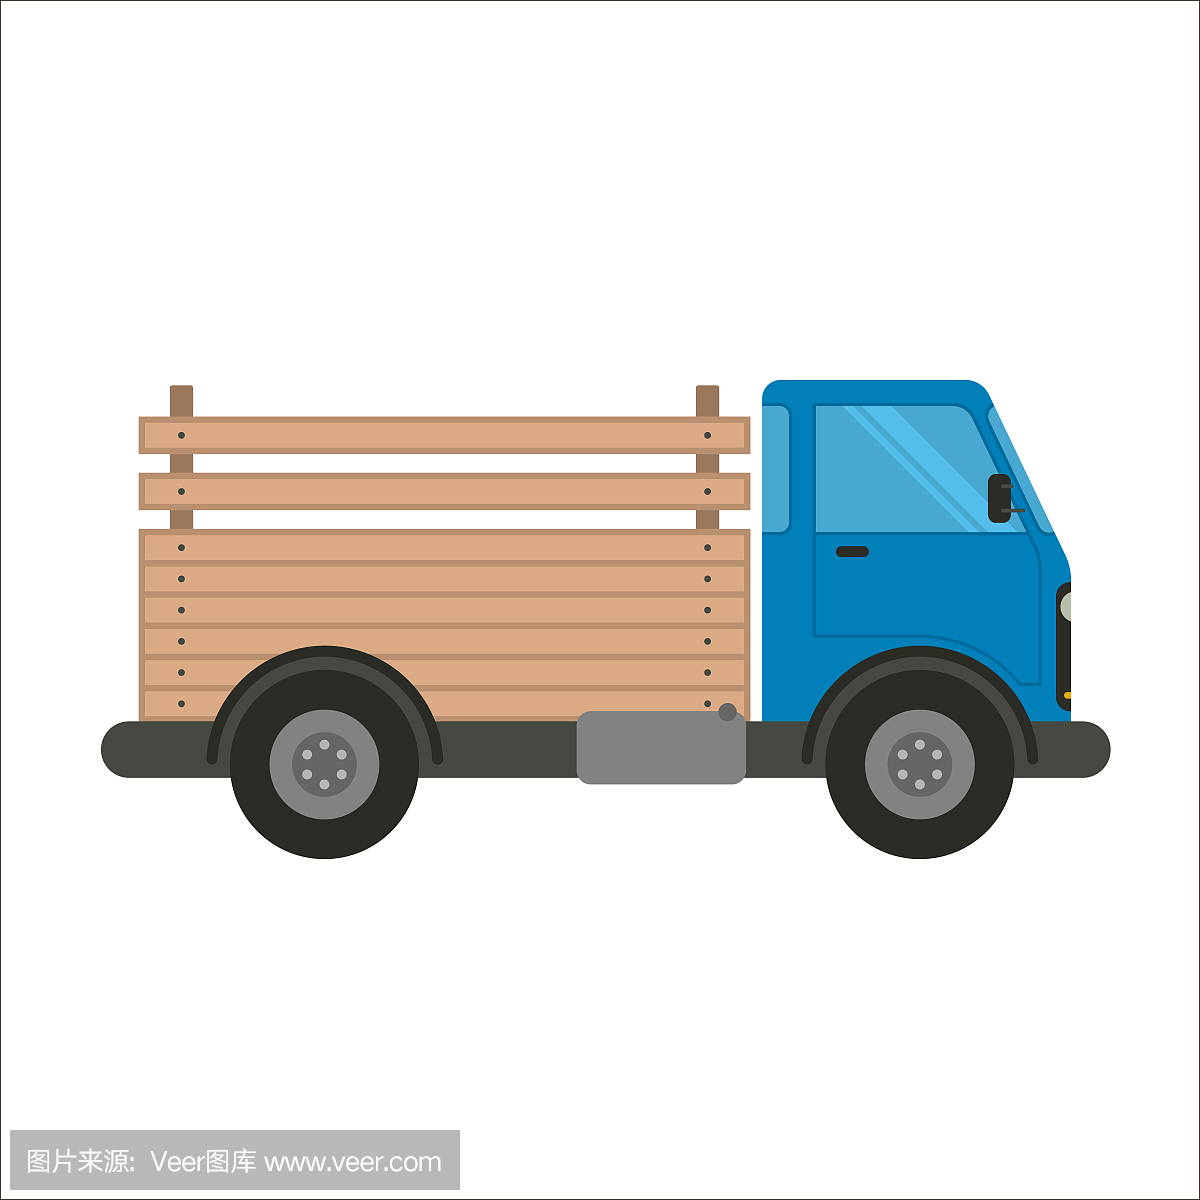 蓝色的卡车,木制的车身